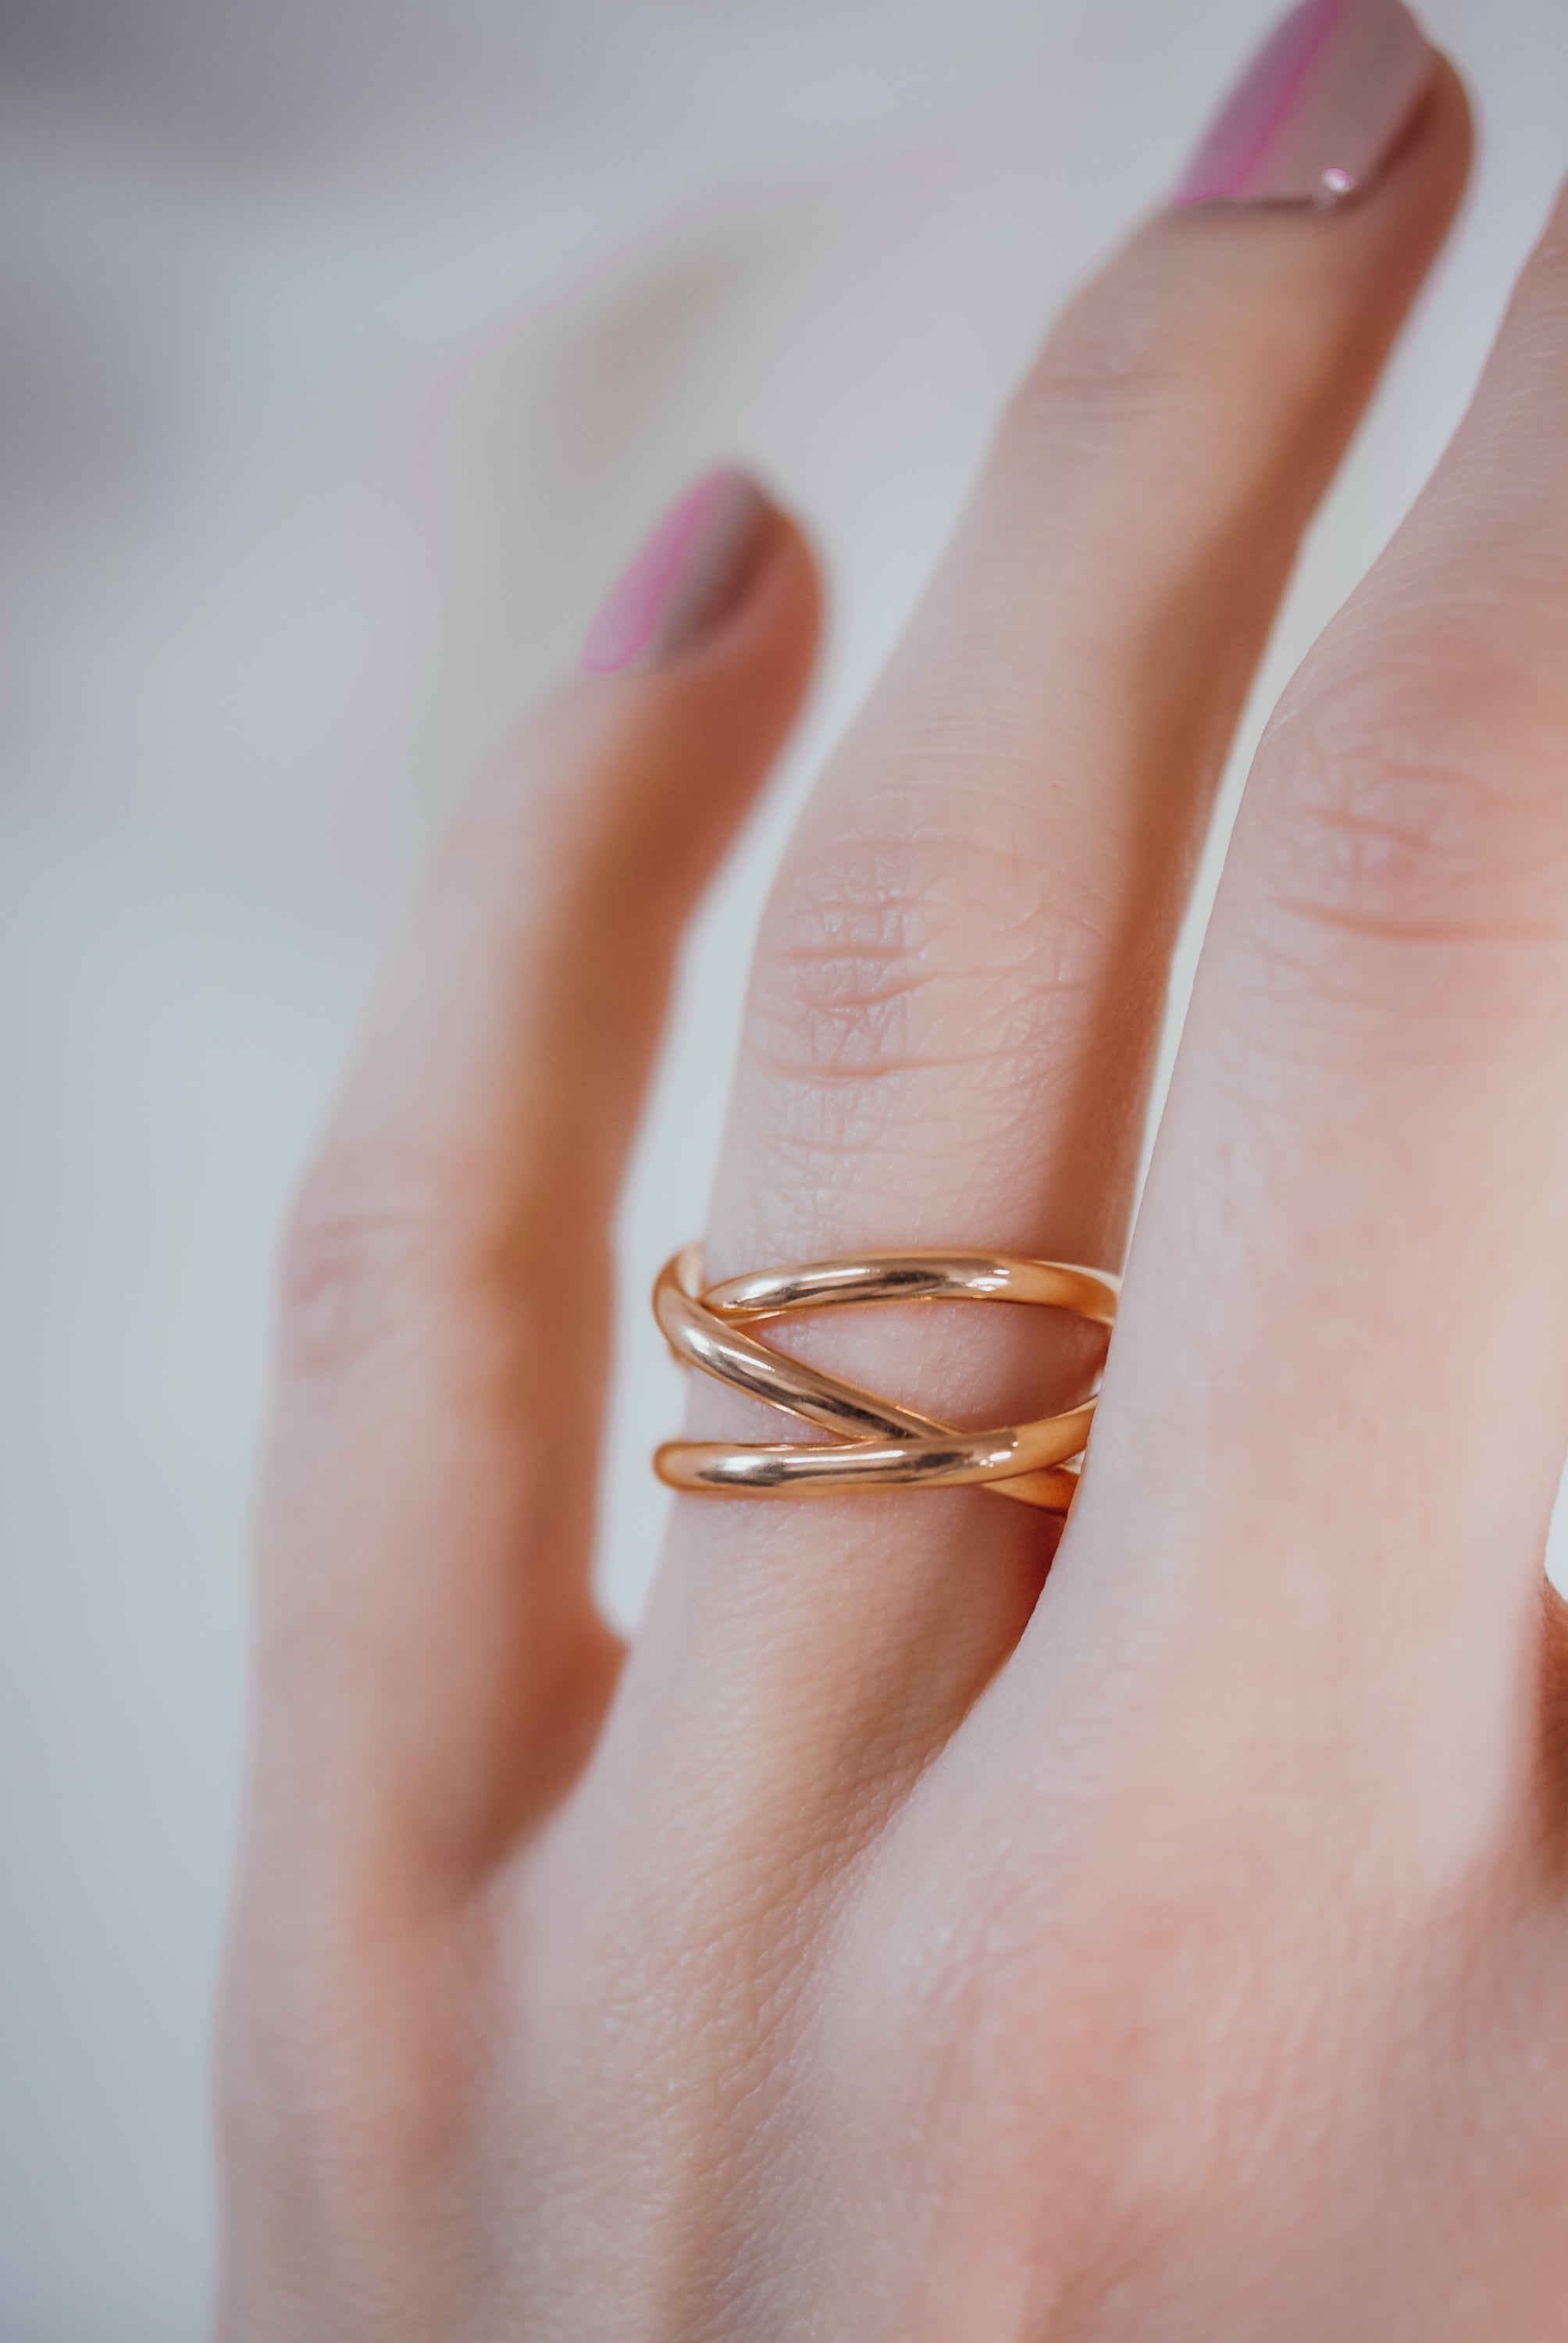 Full Finger Diamond 18K Gold Ring. Flexible Long Gold Spiral | Etsy #ring  #designs #gold #indian #ri… | Gold rings fashion, Gold finger rings, Gold  earrings designs